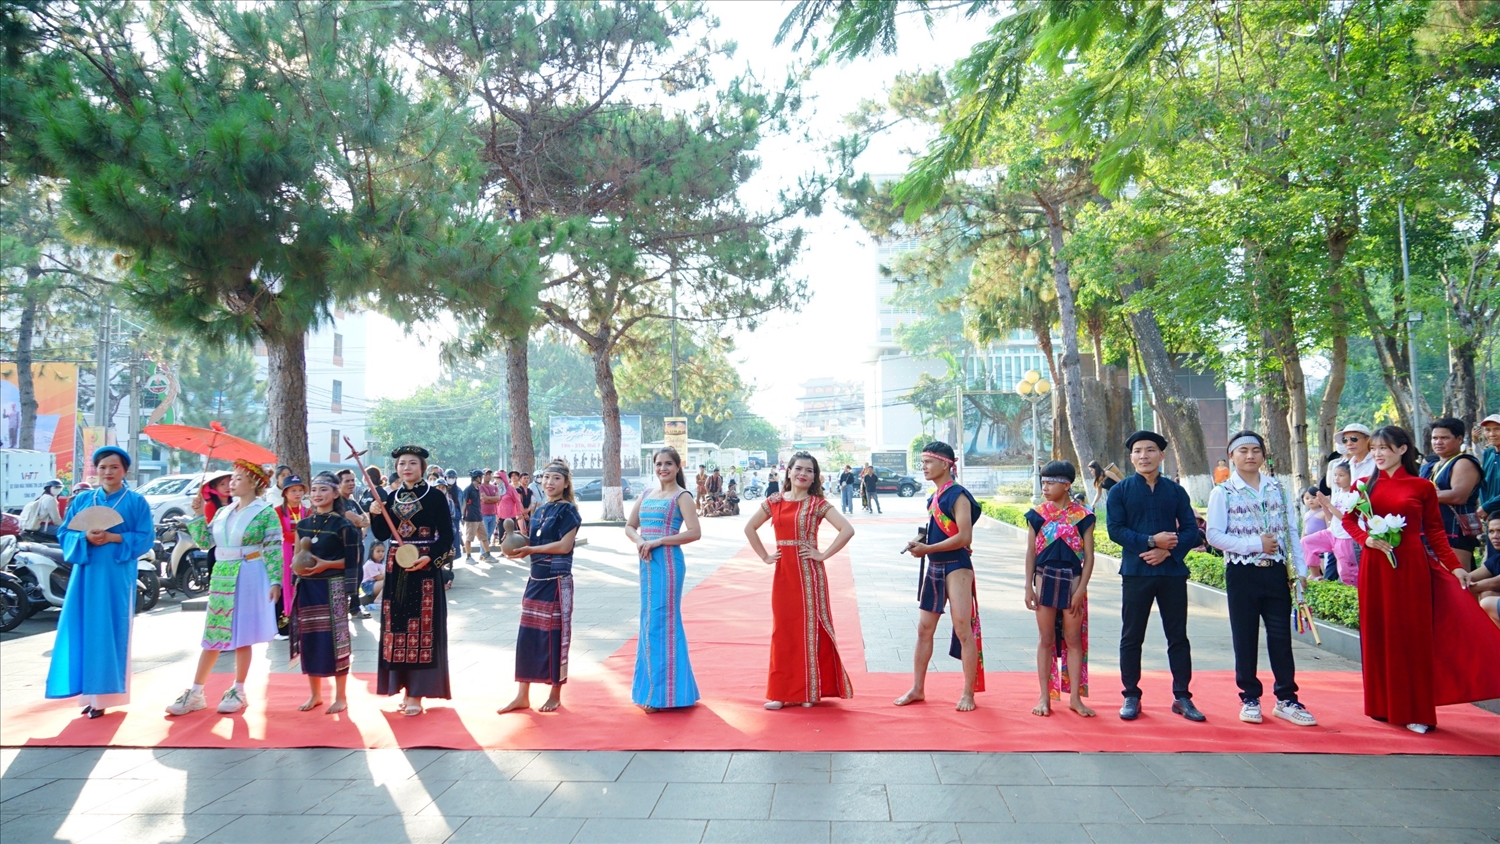 Ngày hội là dịp để tôn vinh sắc màu văn hóa các dân tộc tỉnh Gia Lai